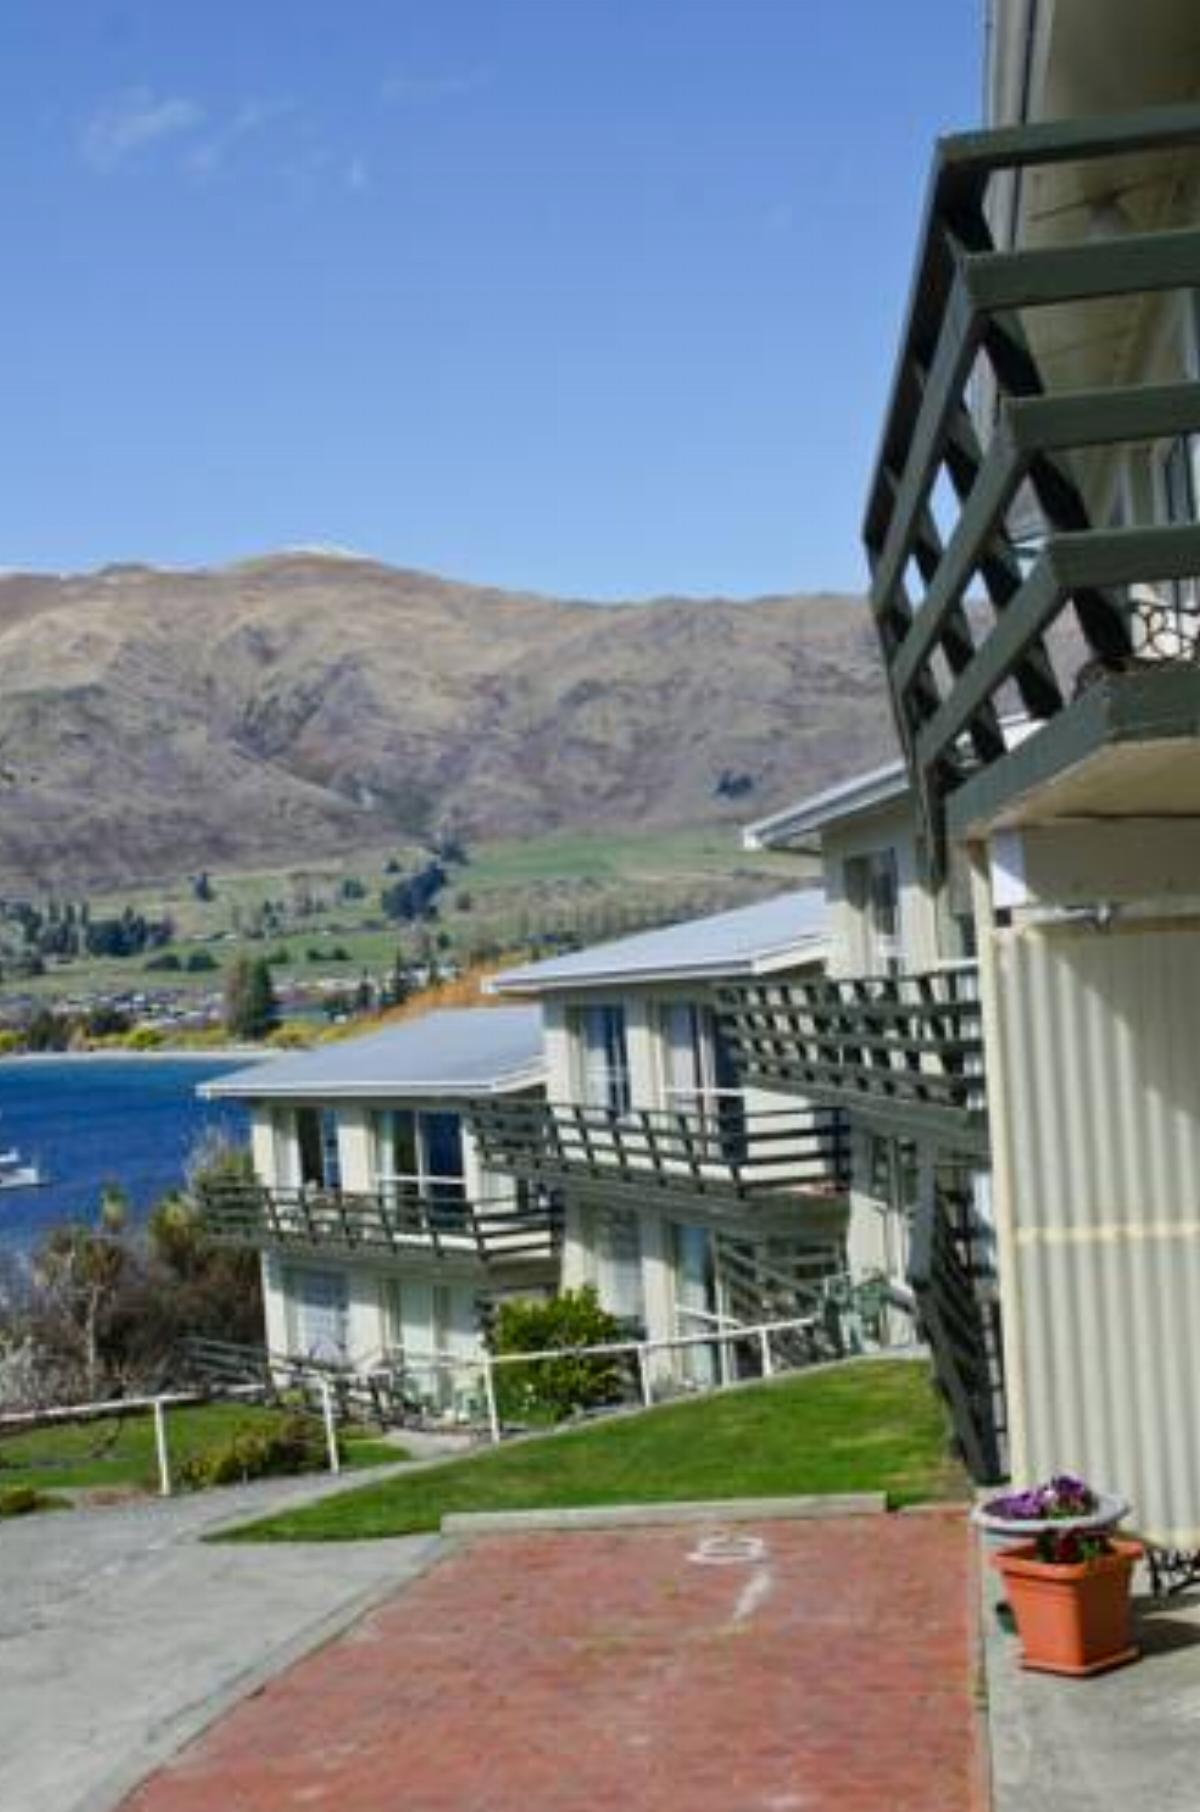 Panorama Court Hotel Wanaka New Zealand